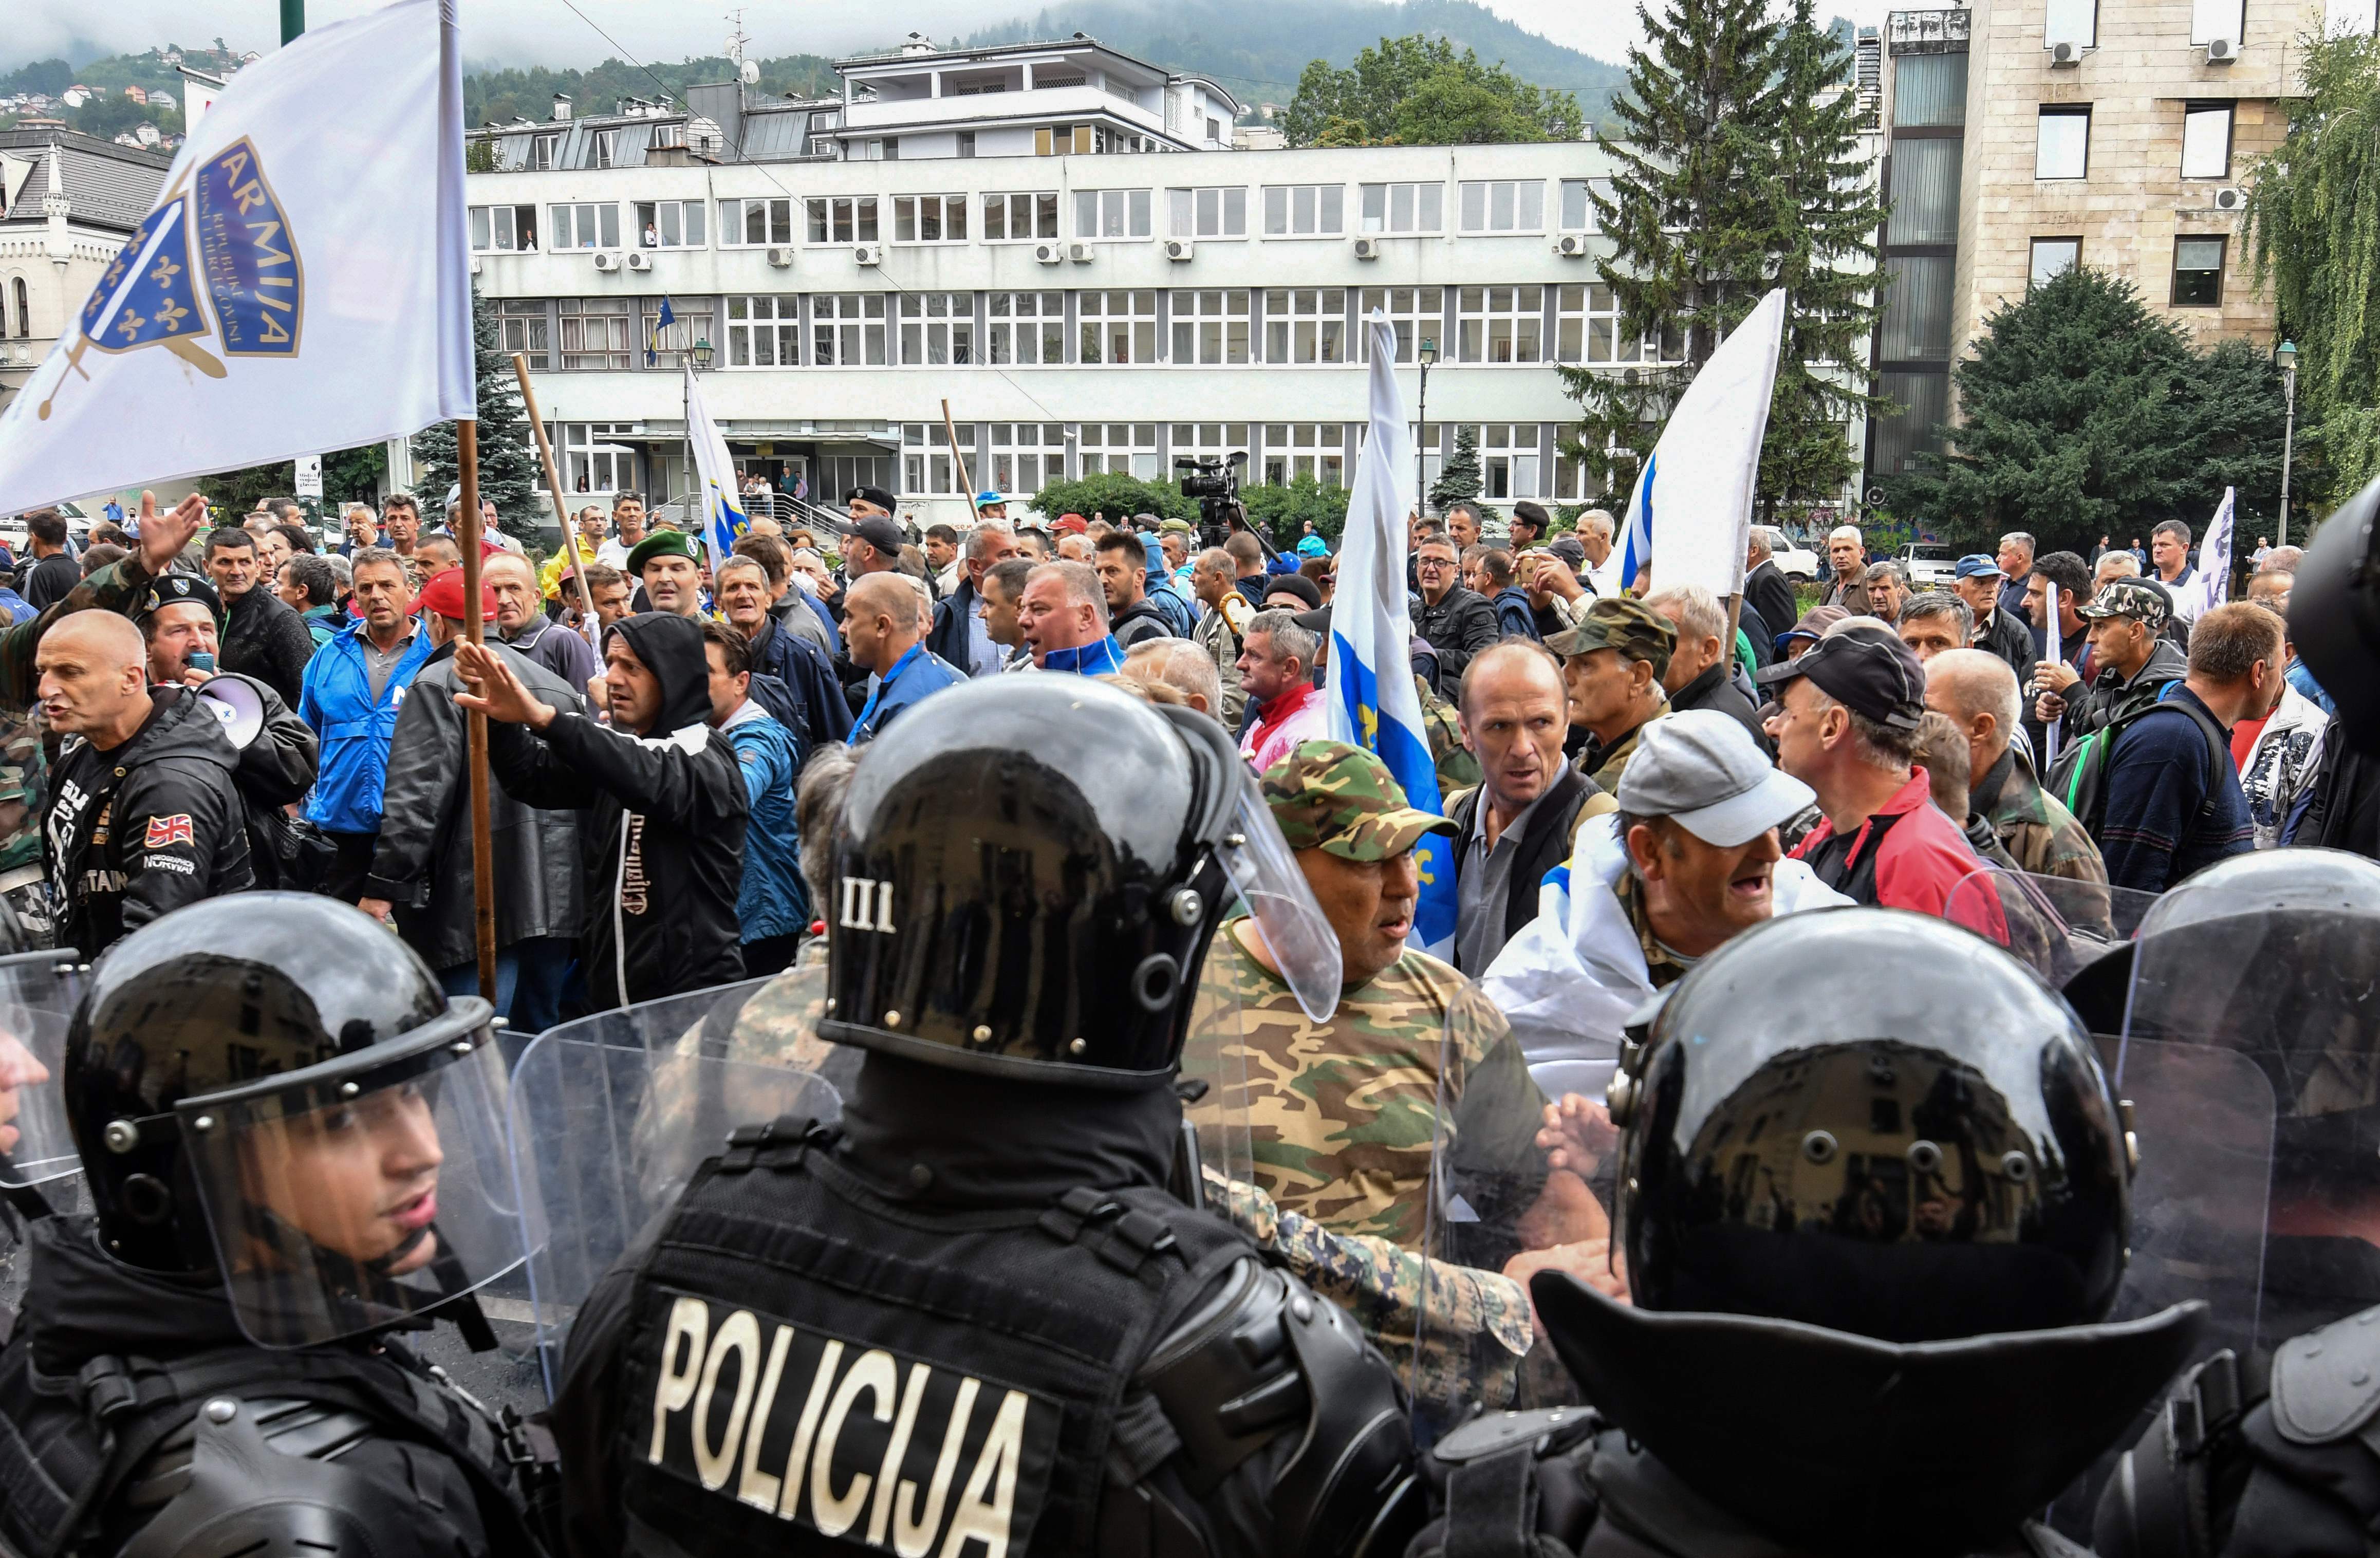 صور.. شرطة البوسنة تشتبك مع مئات من المحاربين القدماء بالعاصمة سراييفو  1394638-البوسنة-(6)